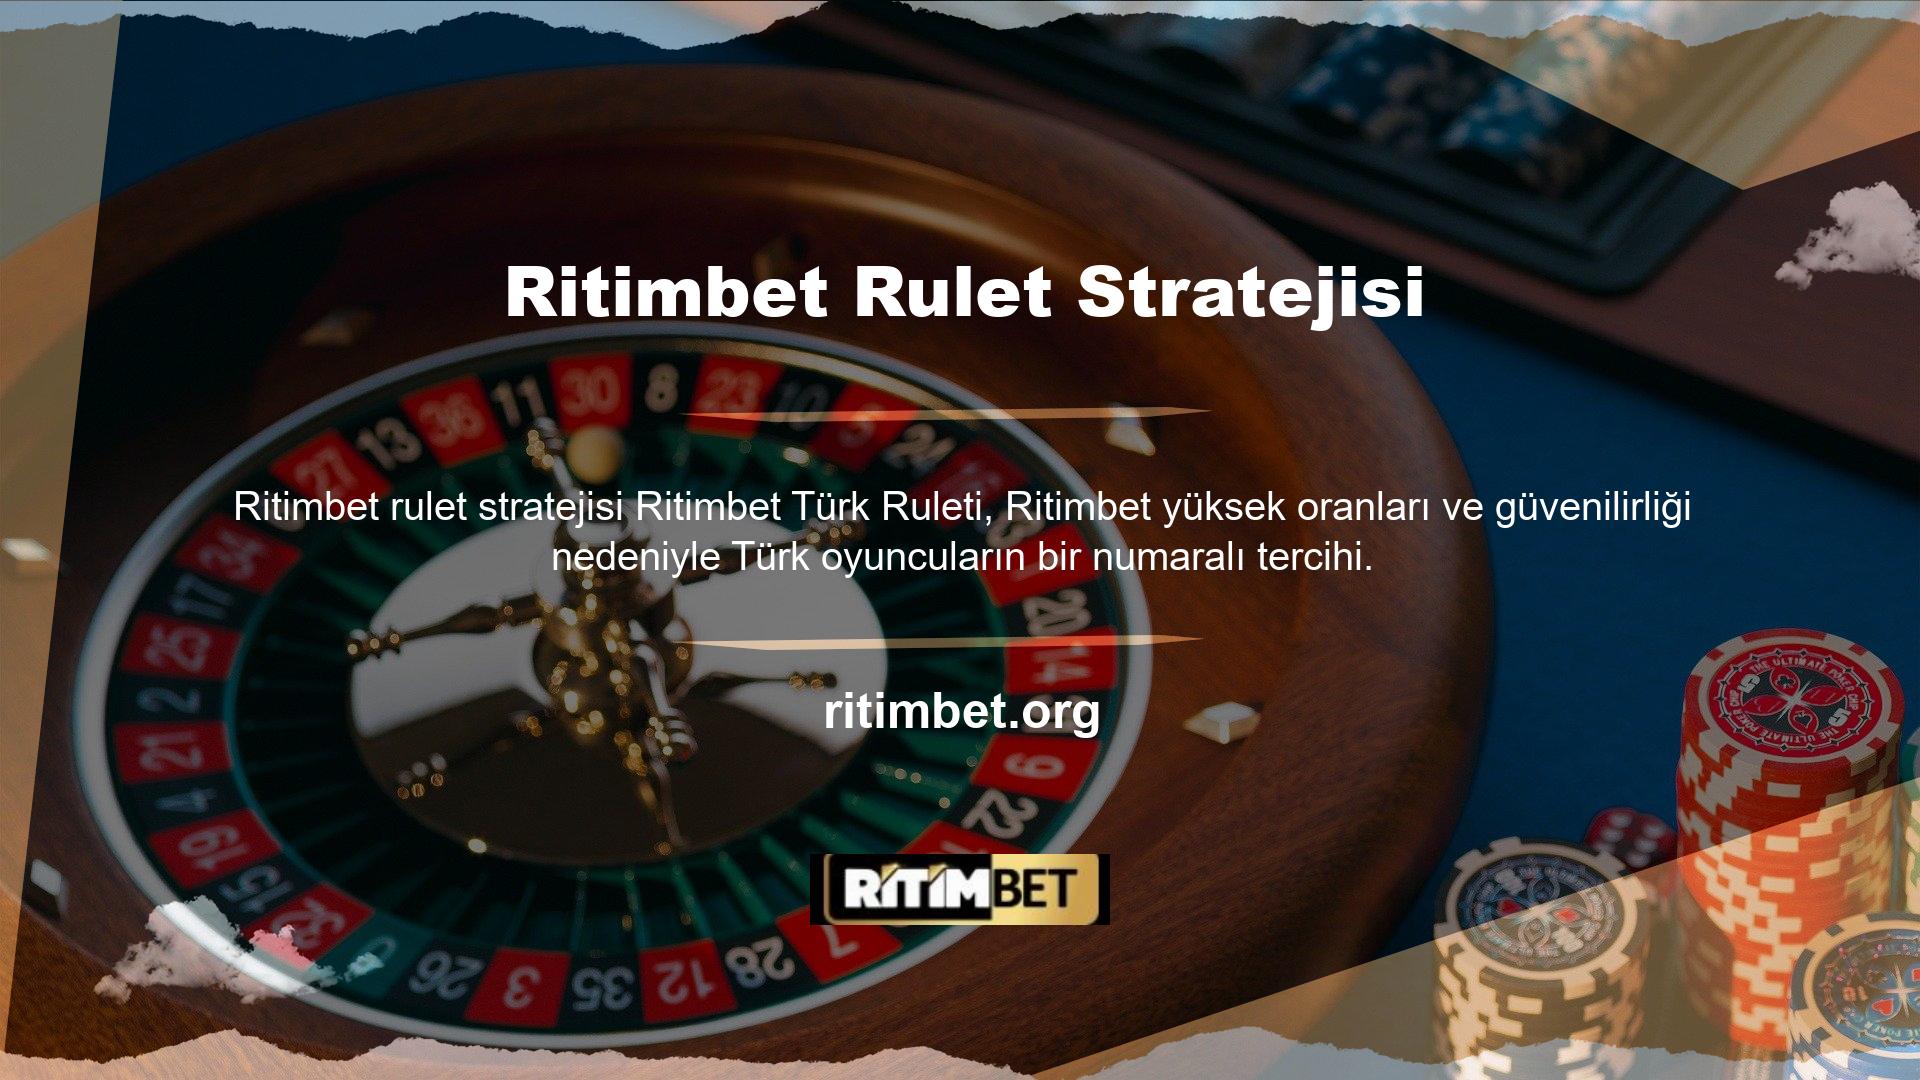 Casino sektöründe varlığını sürdürmekte olan bu platform rulette eğlenmek ve kazanmak isteyen üyelere avantaj sunmaktadır